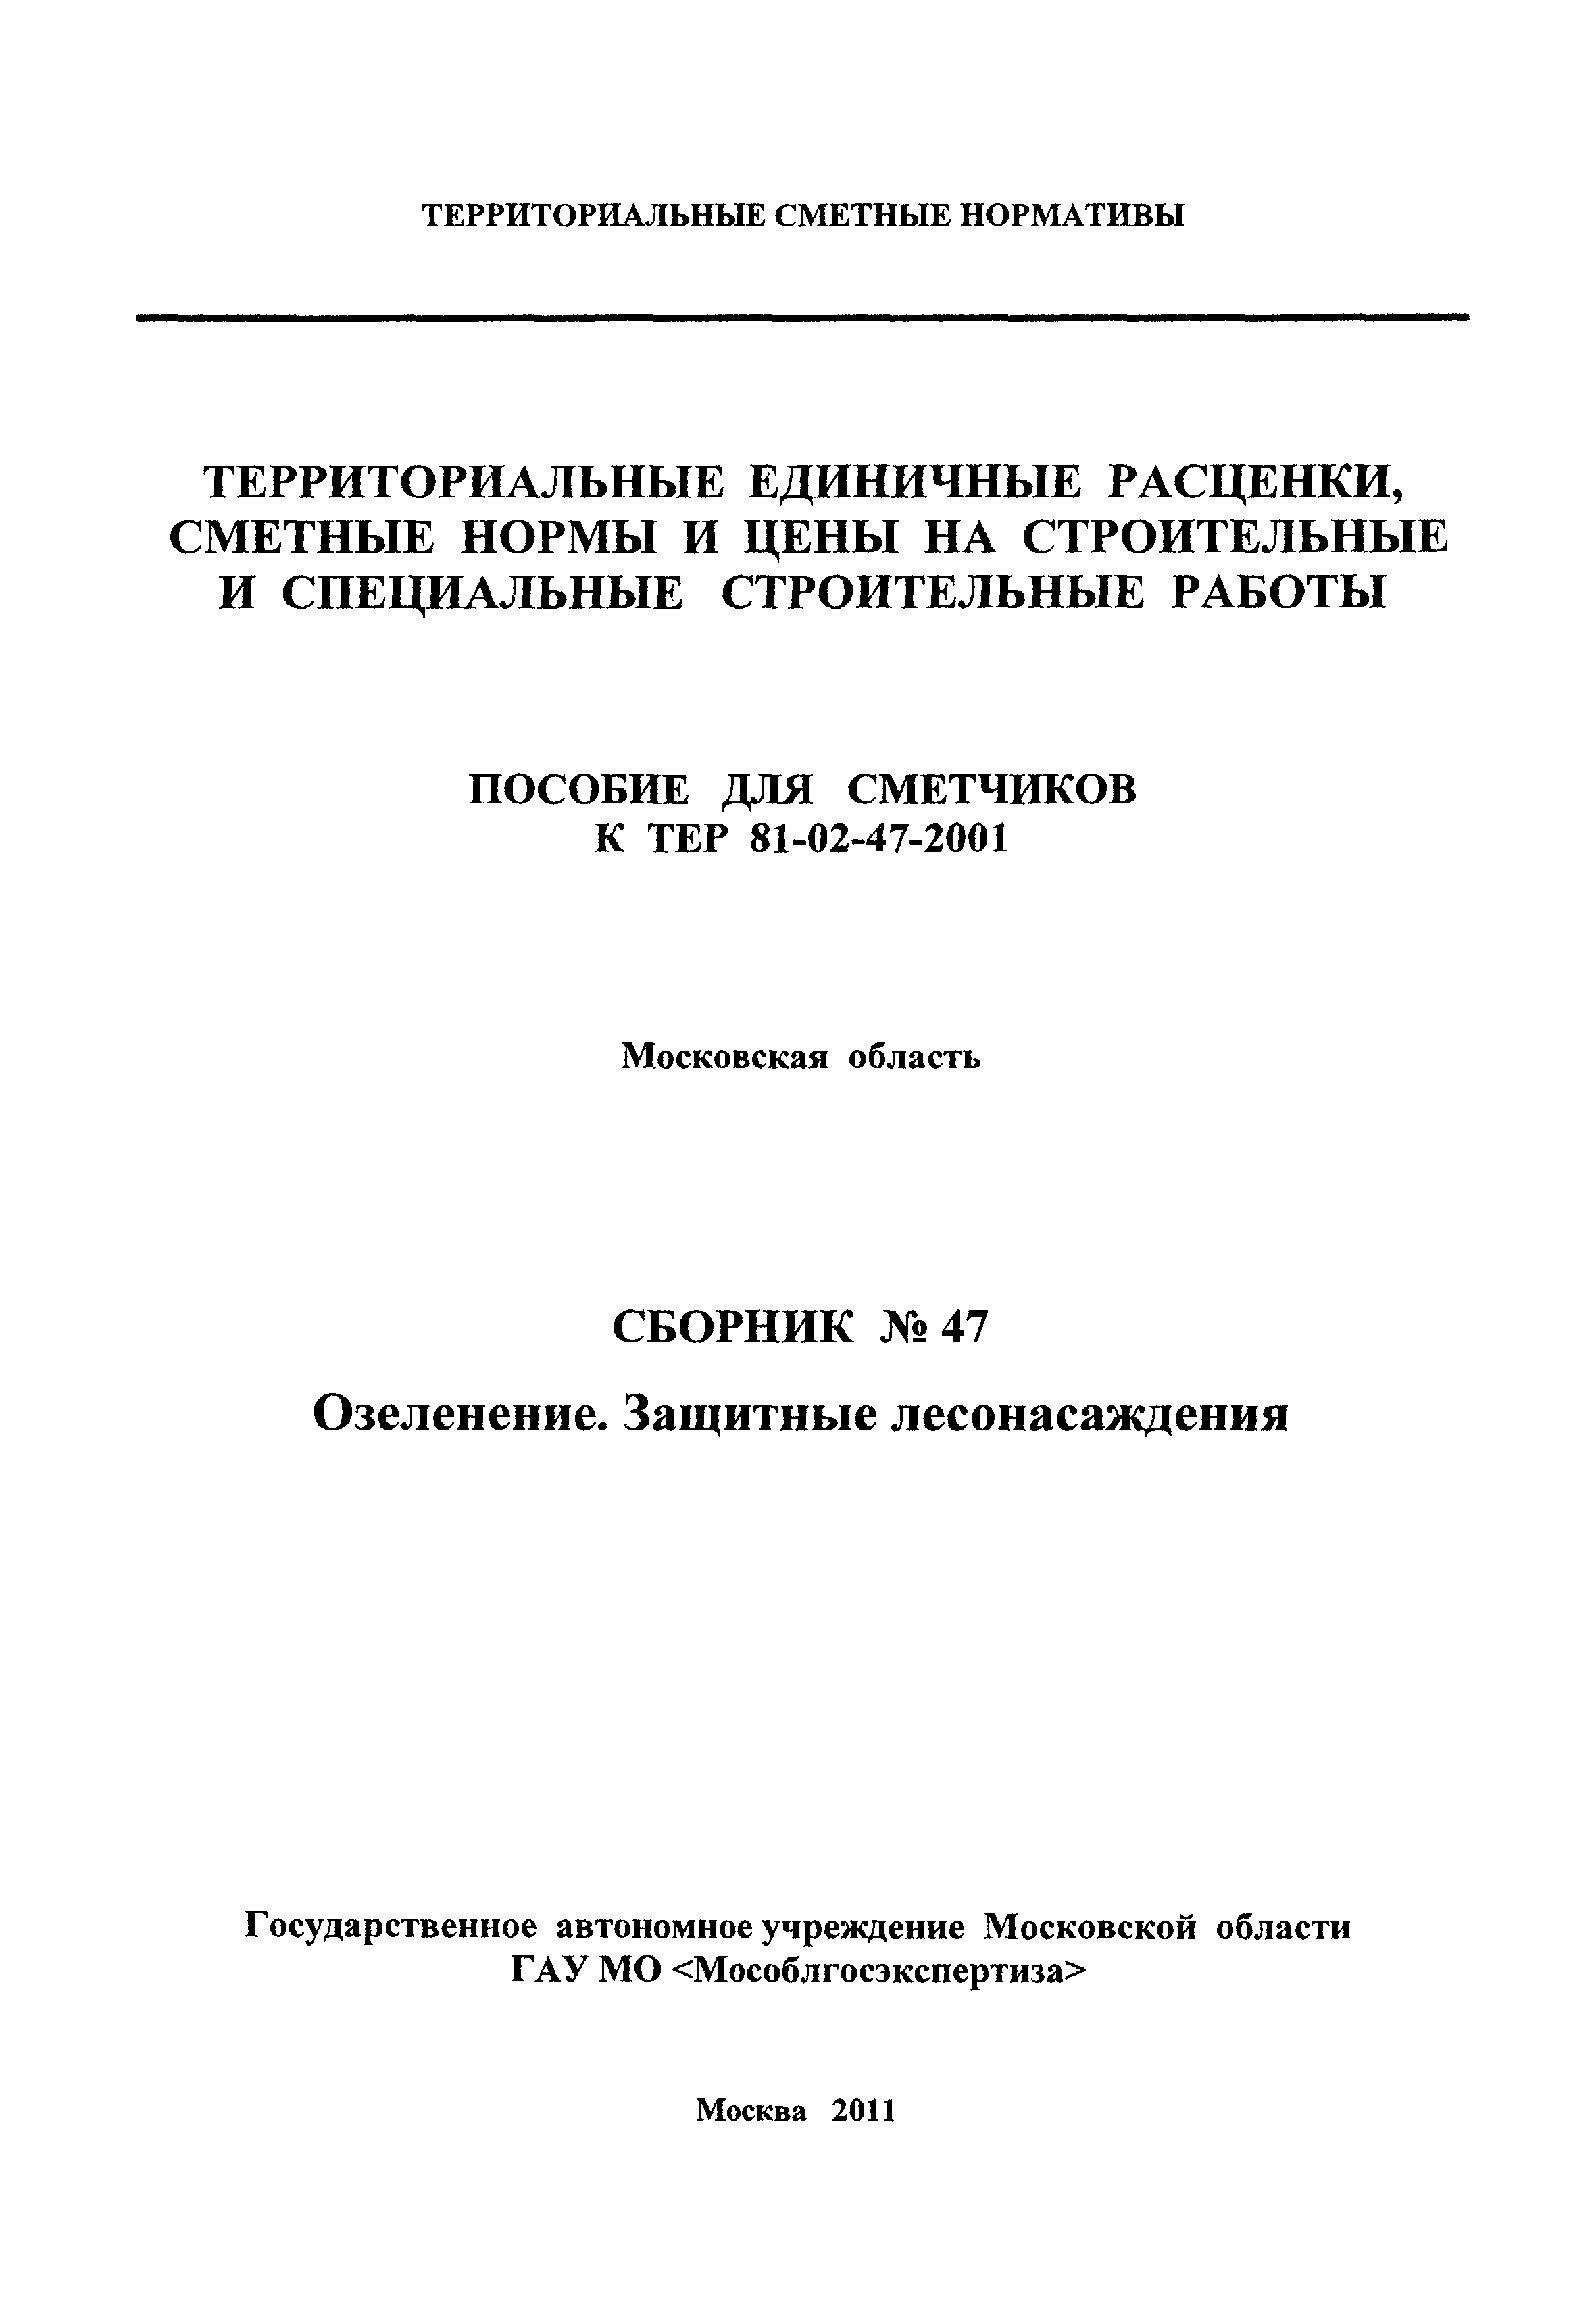 ГЭСНПиТЕР 2001-47 Московской области